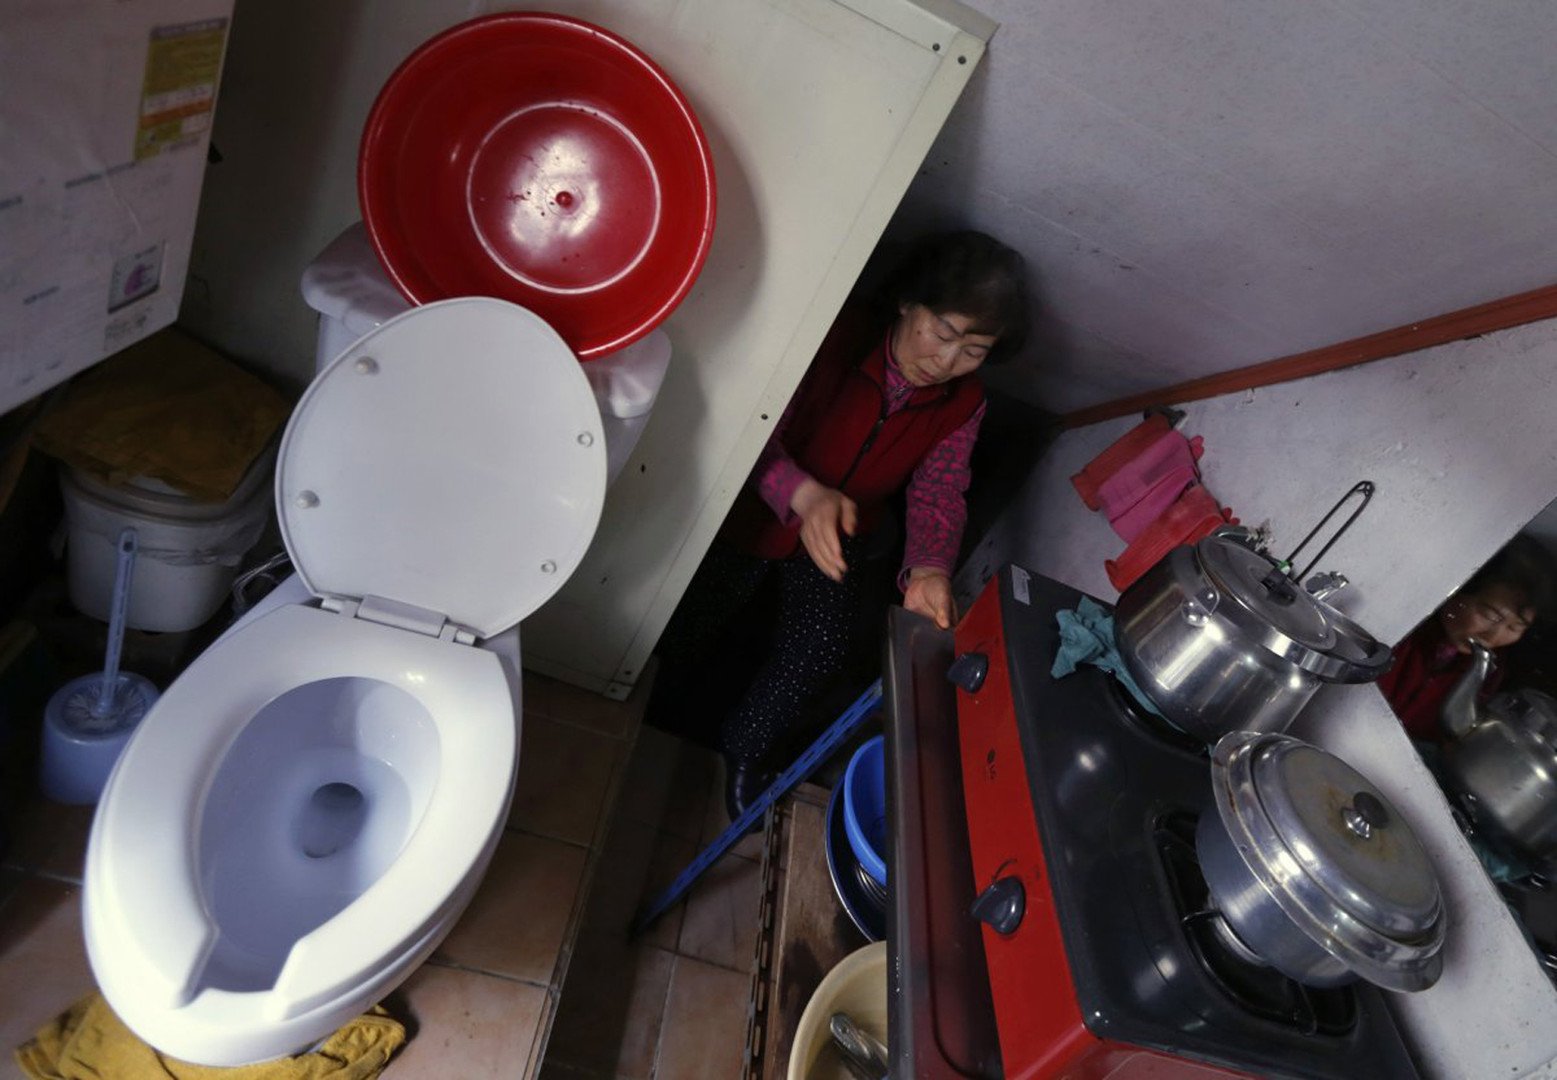 كانغ كيونغ سون (73 عاما) تعيش في شقة ضيقة بمساحة 20 قدما مربعا أي لا تتعدى الـ 10 أمتار مربعة، سيؤول، كوريا الجنوبية